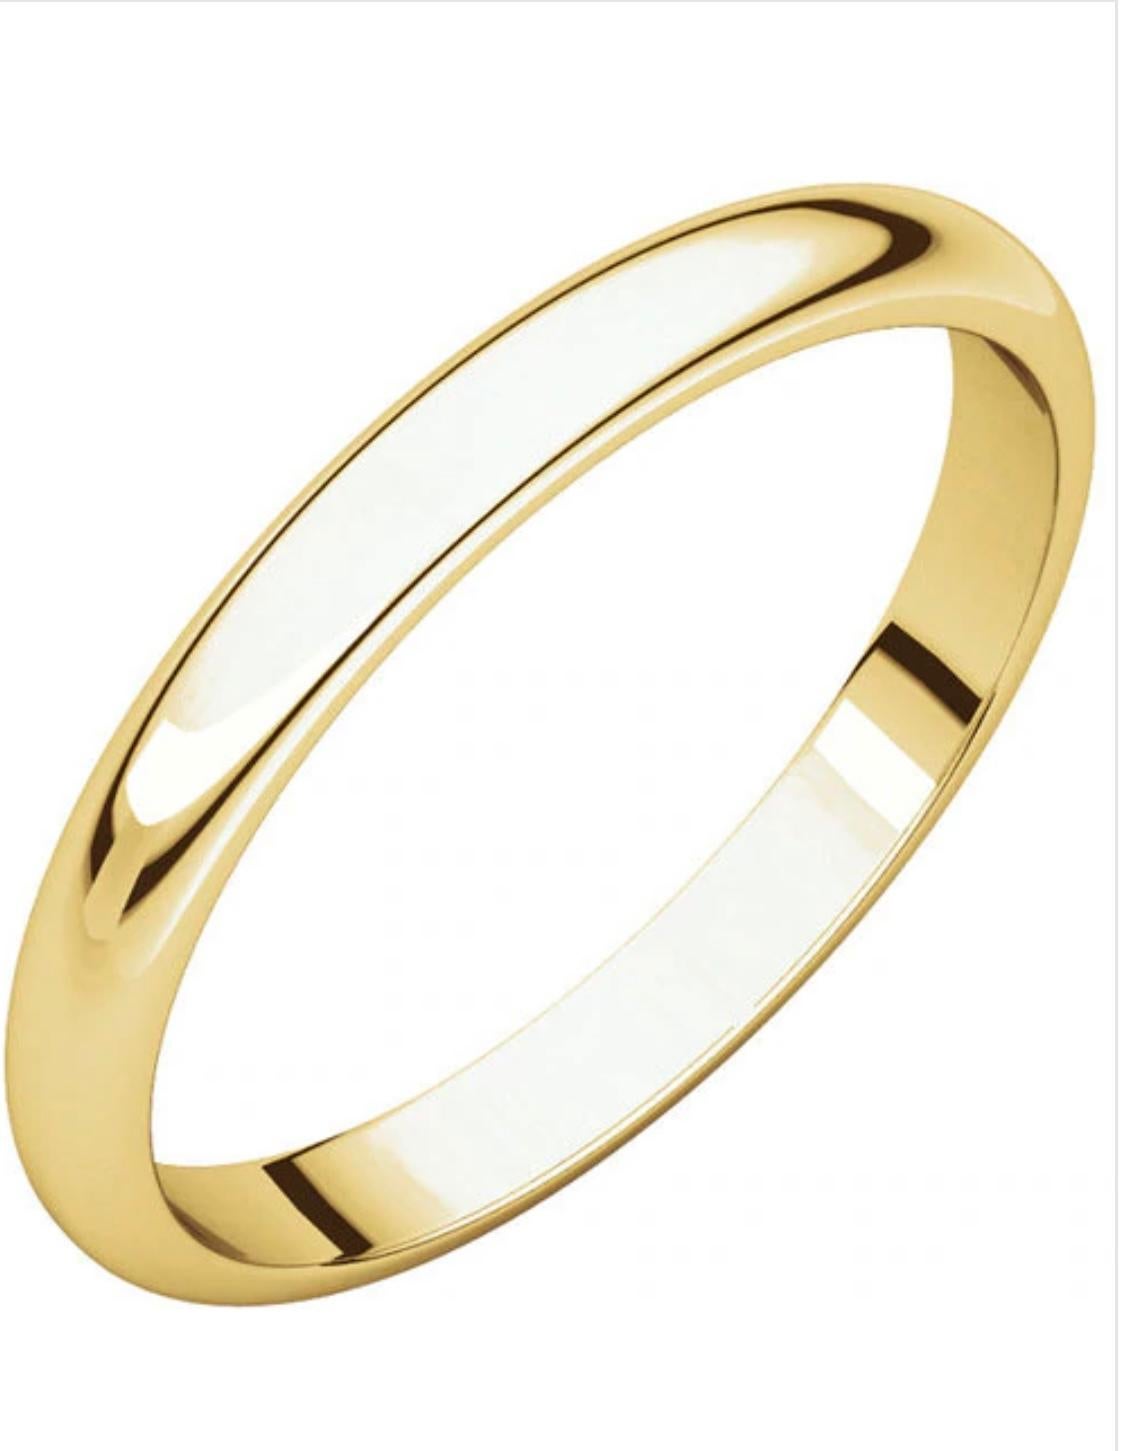 14 karat gold ring worth